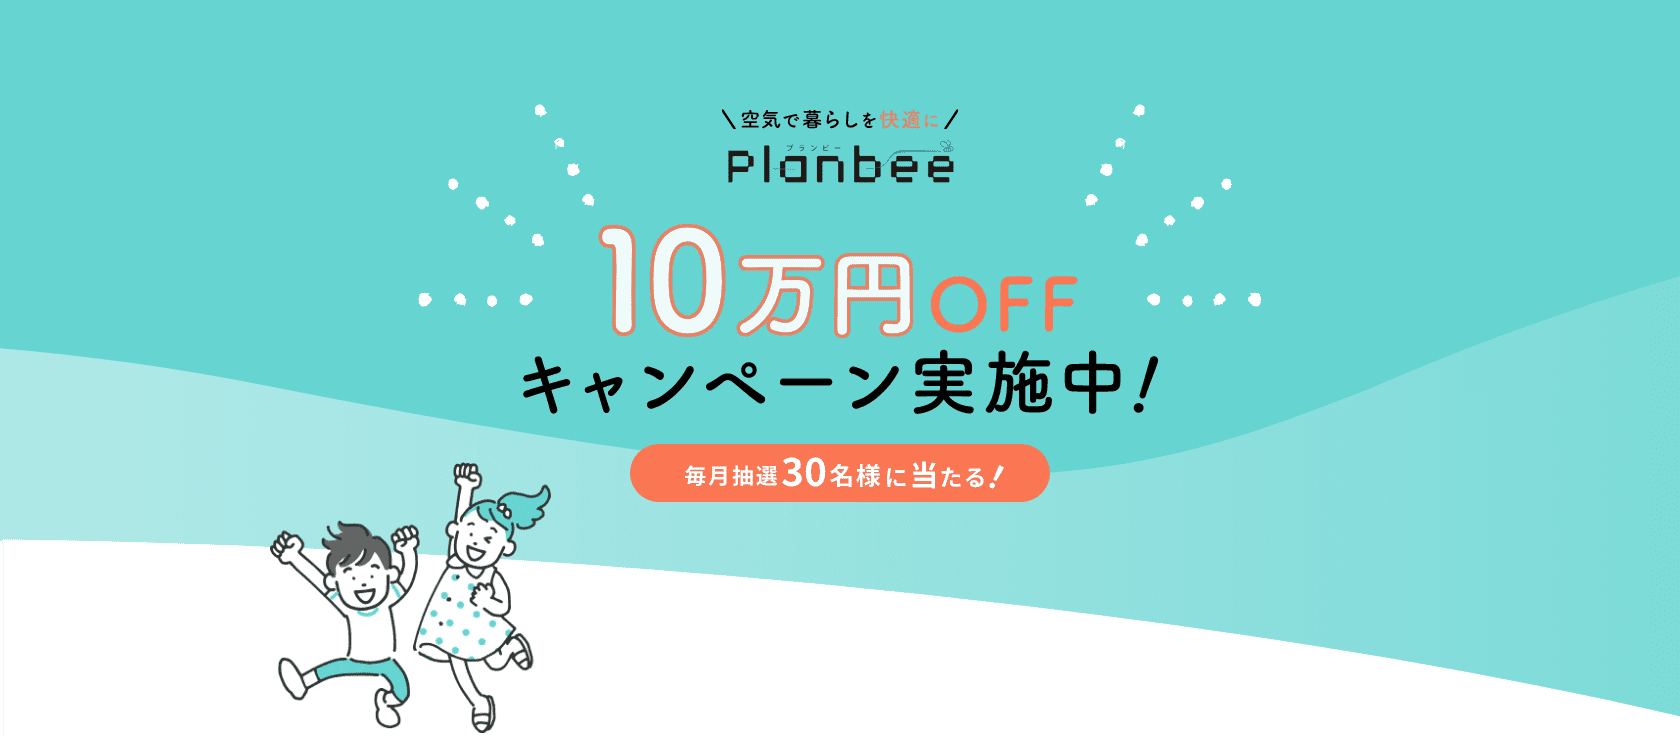 Planbee 10万円OFFキャンペーン実施中